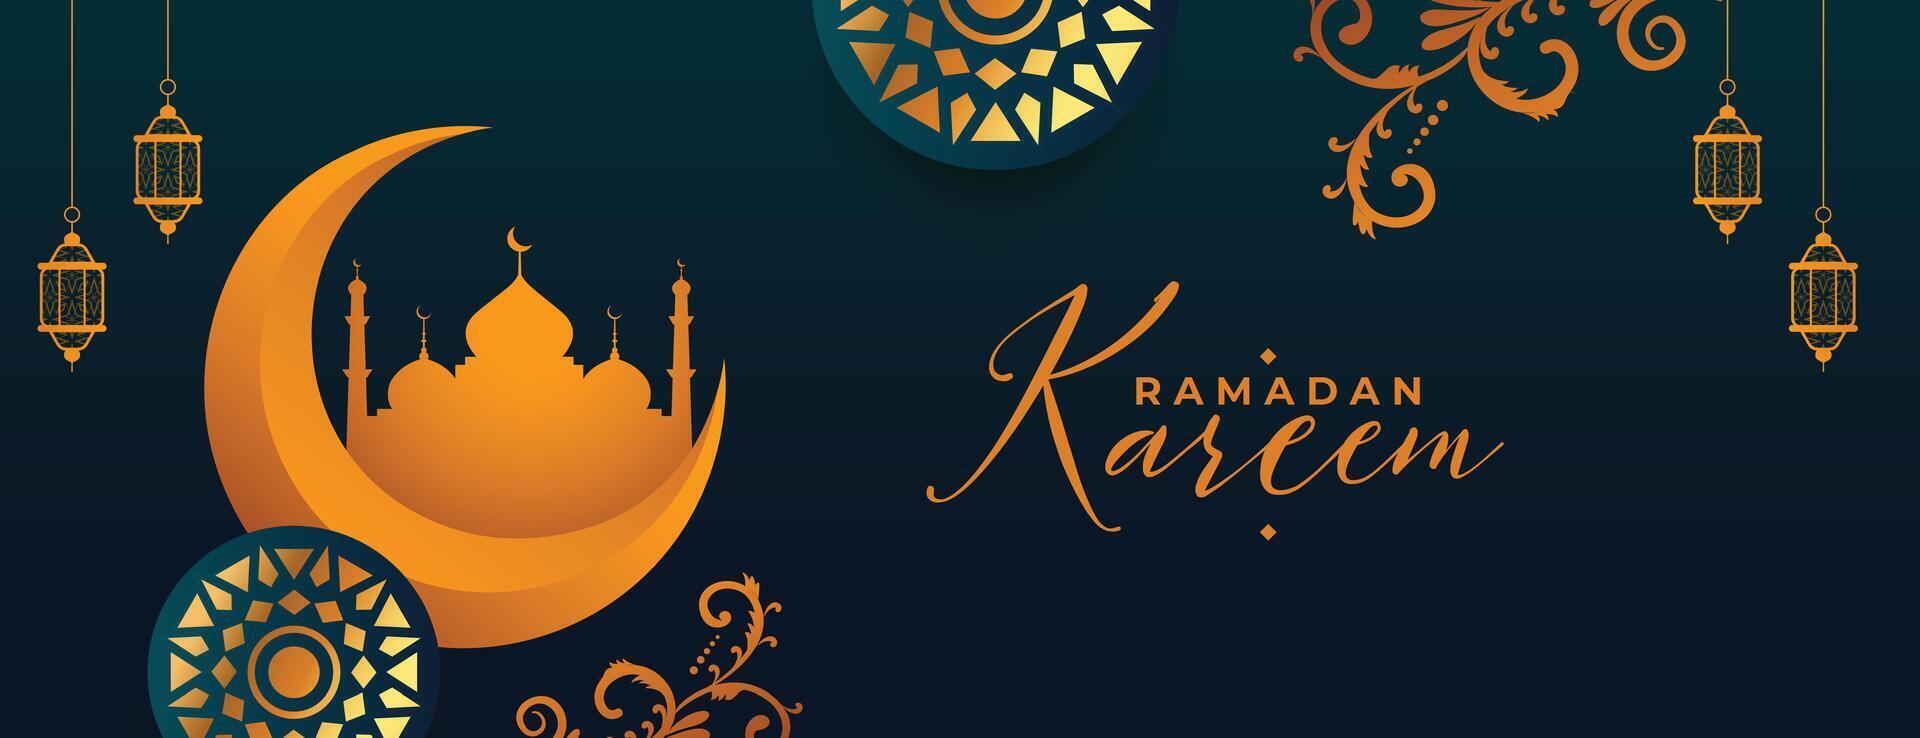 islamic ramadan kareem dekorativ baner för eid festival vektor